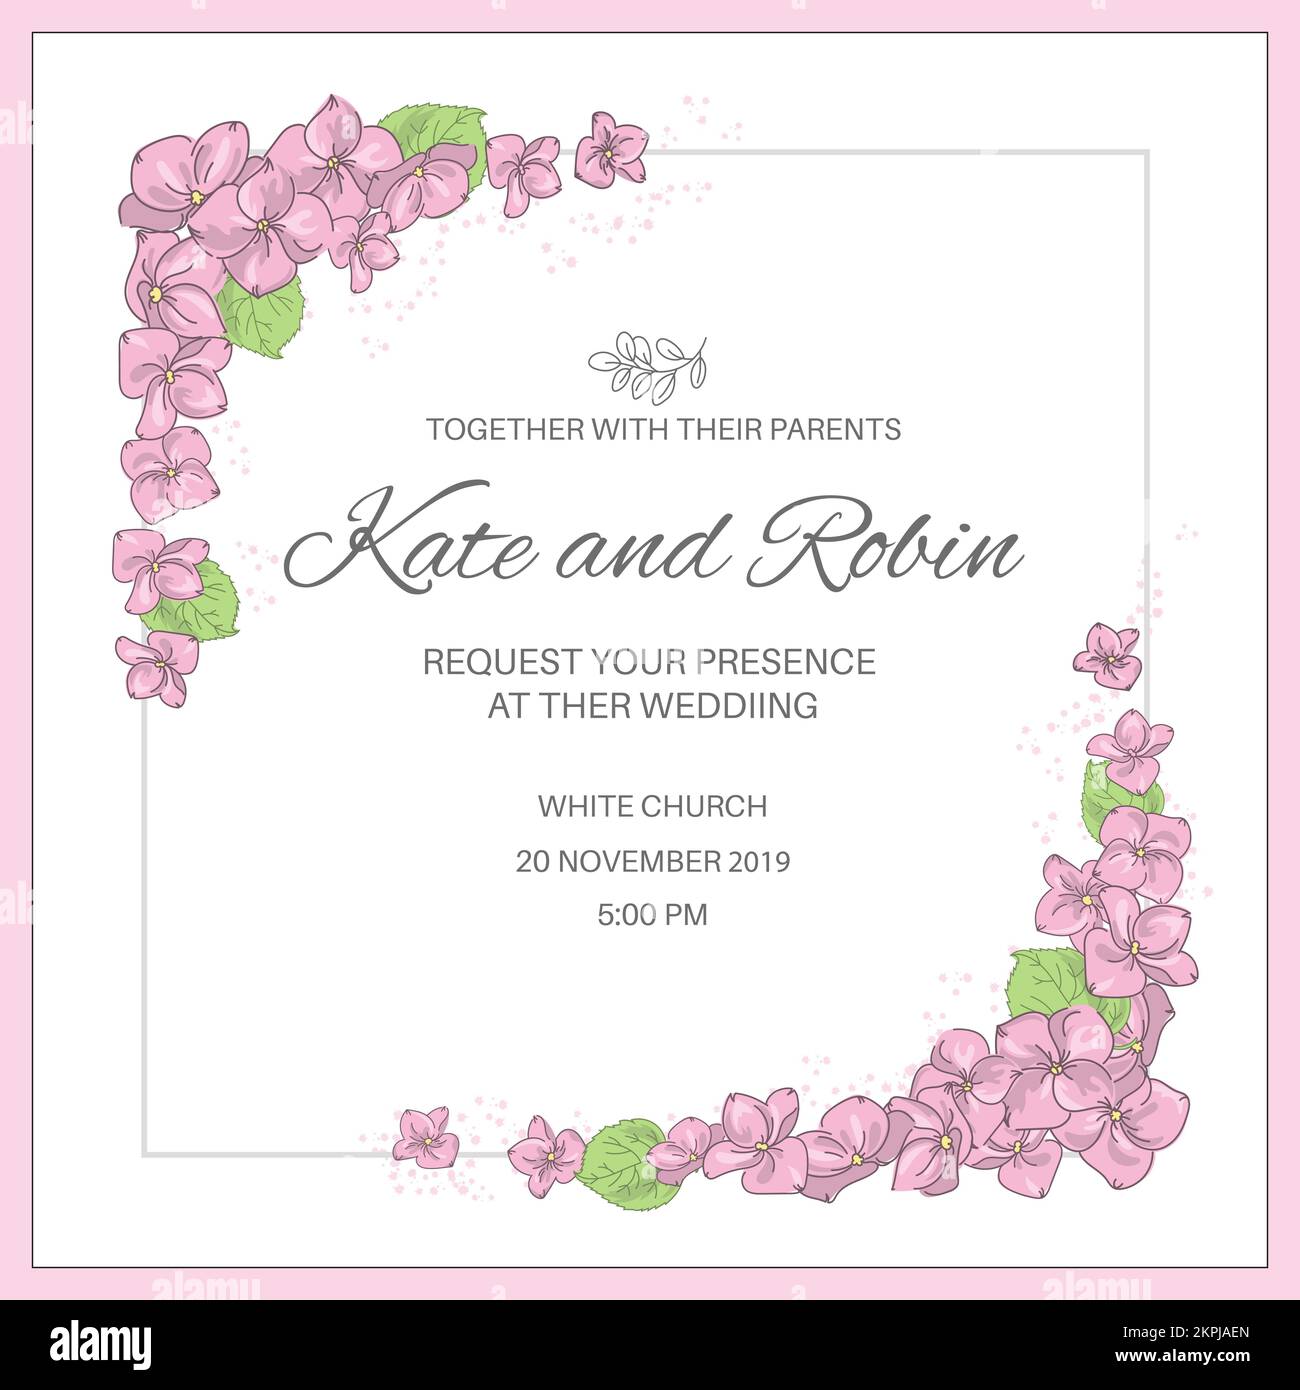 WEDDING INVITE Frame Template con composiciones de flores rosadas en las esquinas con texto en el centro de dibujos animados Clip Art Vector Illustration Set for Print Ilustración del Vector